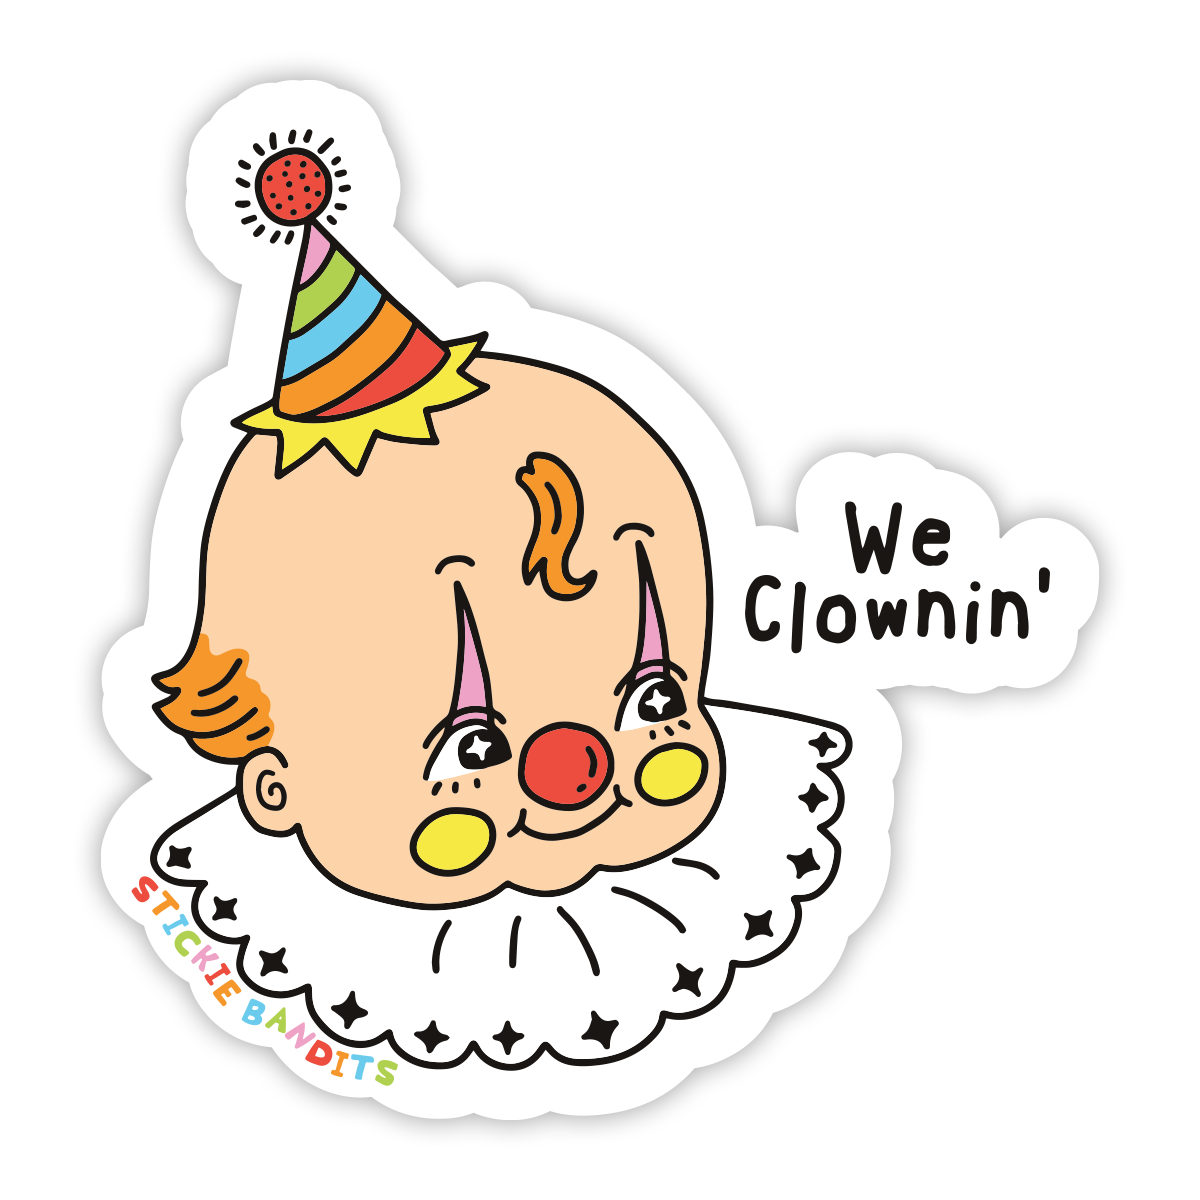 Clownin' Sticker